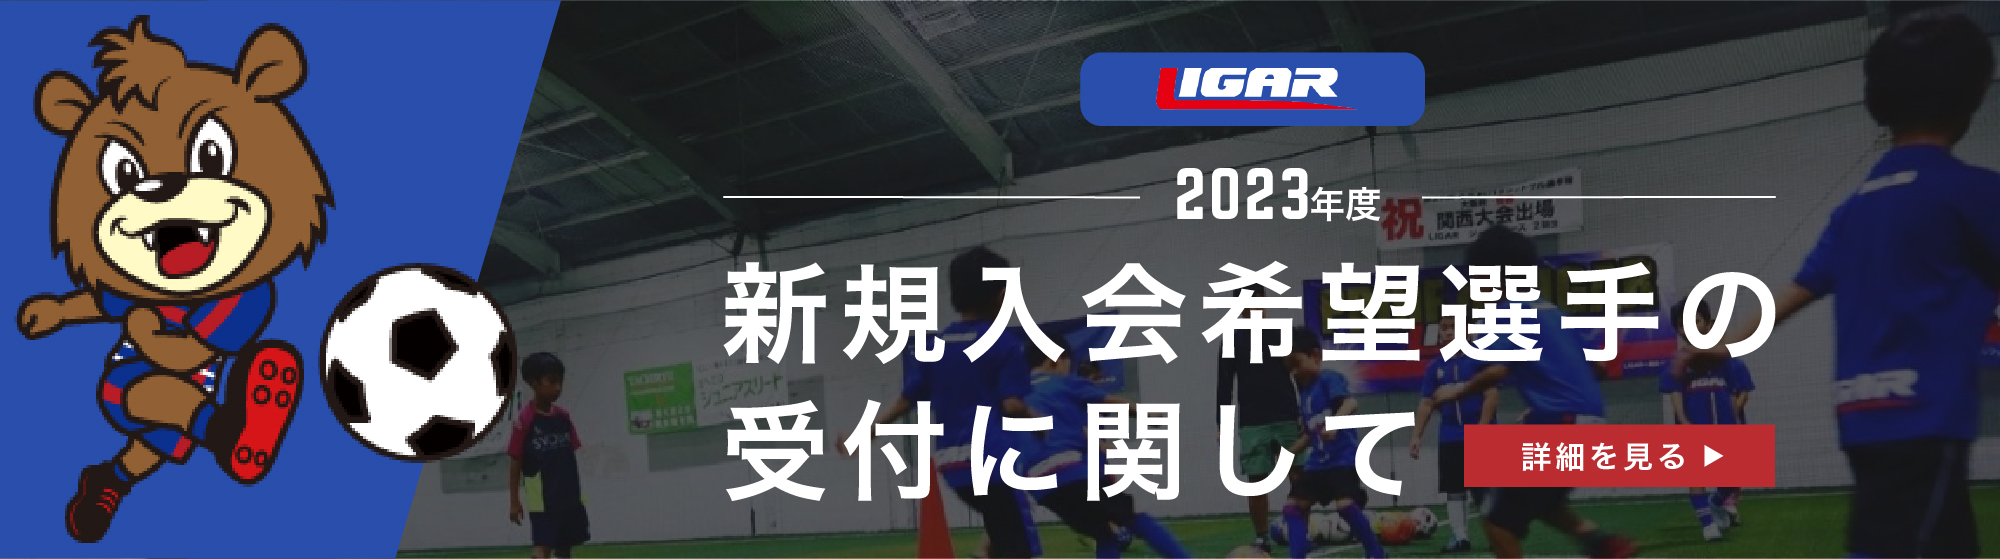 2023年度 LIGAR JPC 新規入会希望選手の受付に関して